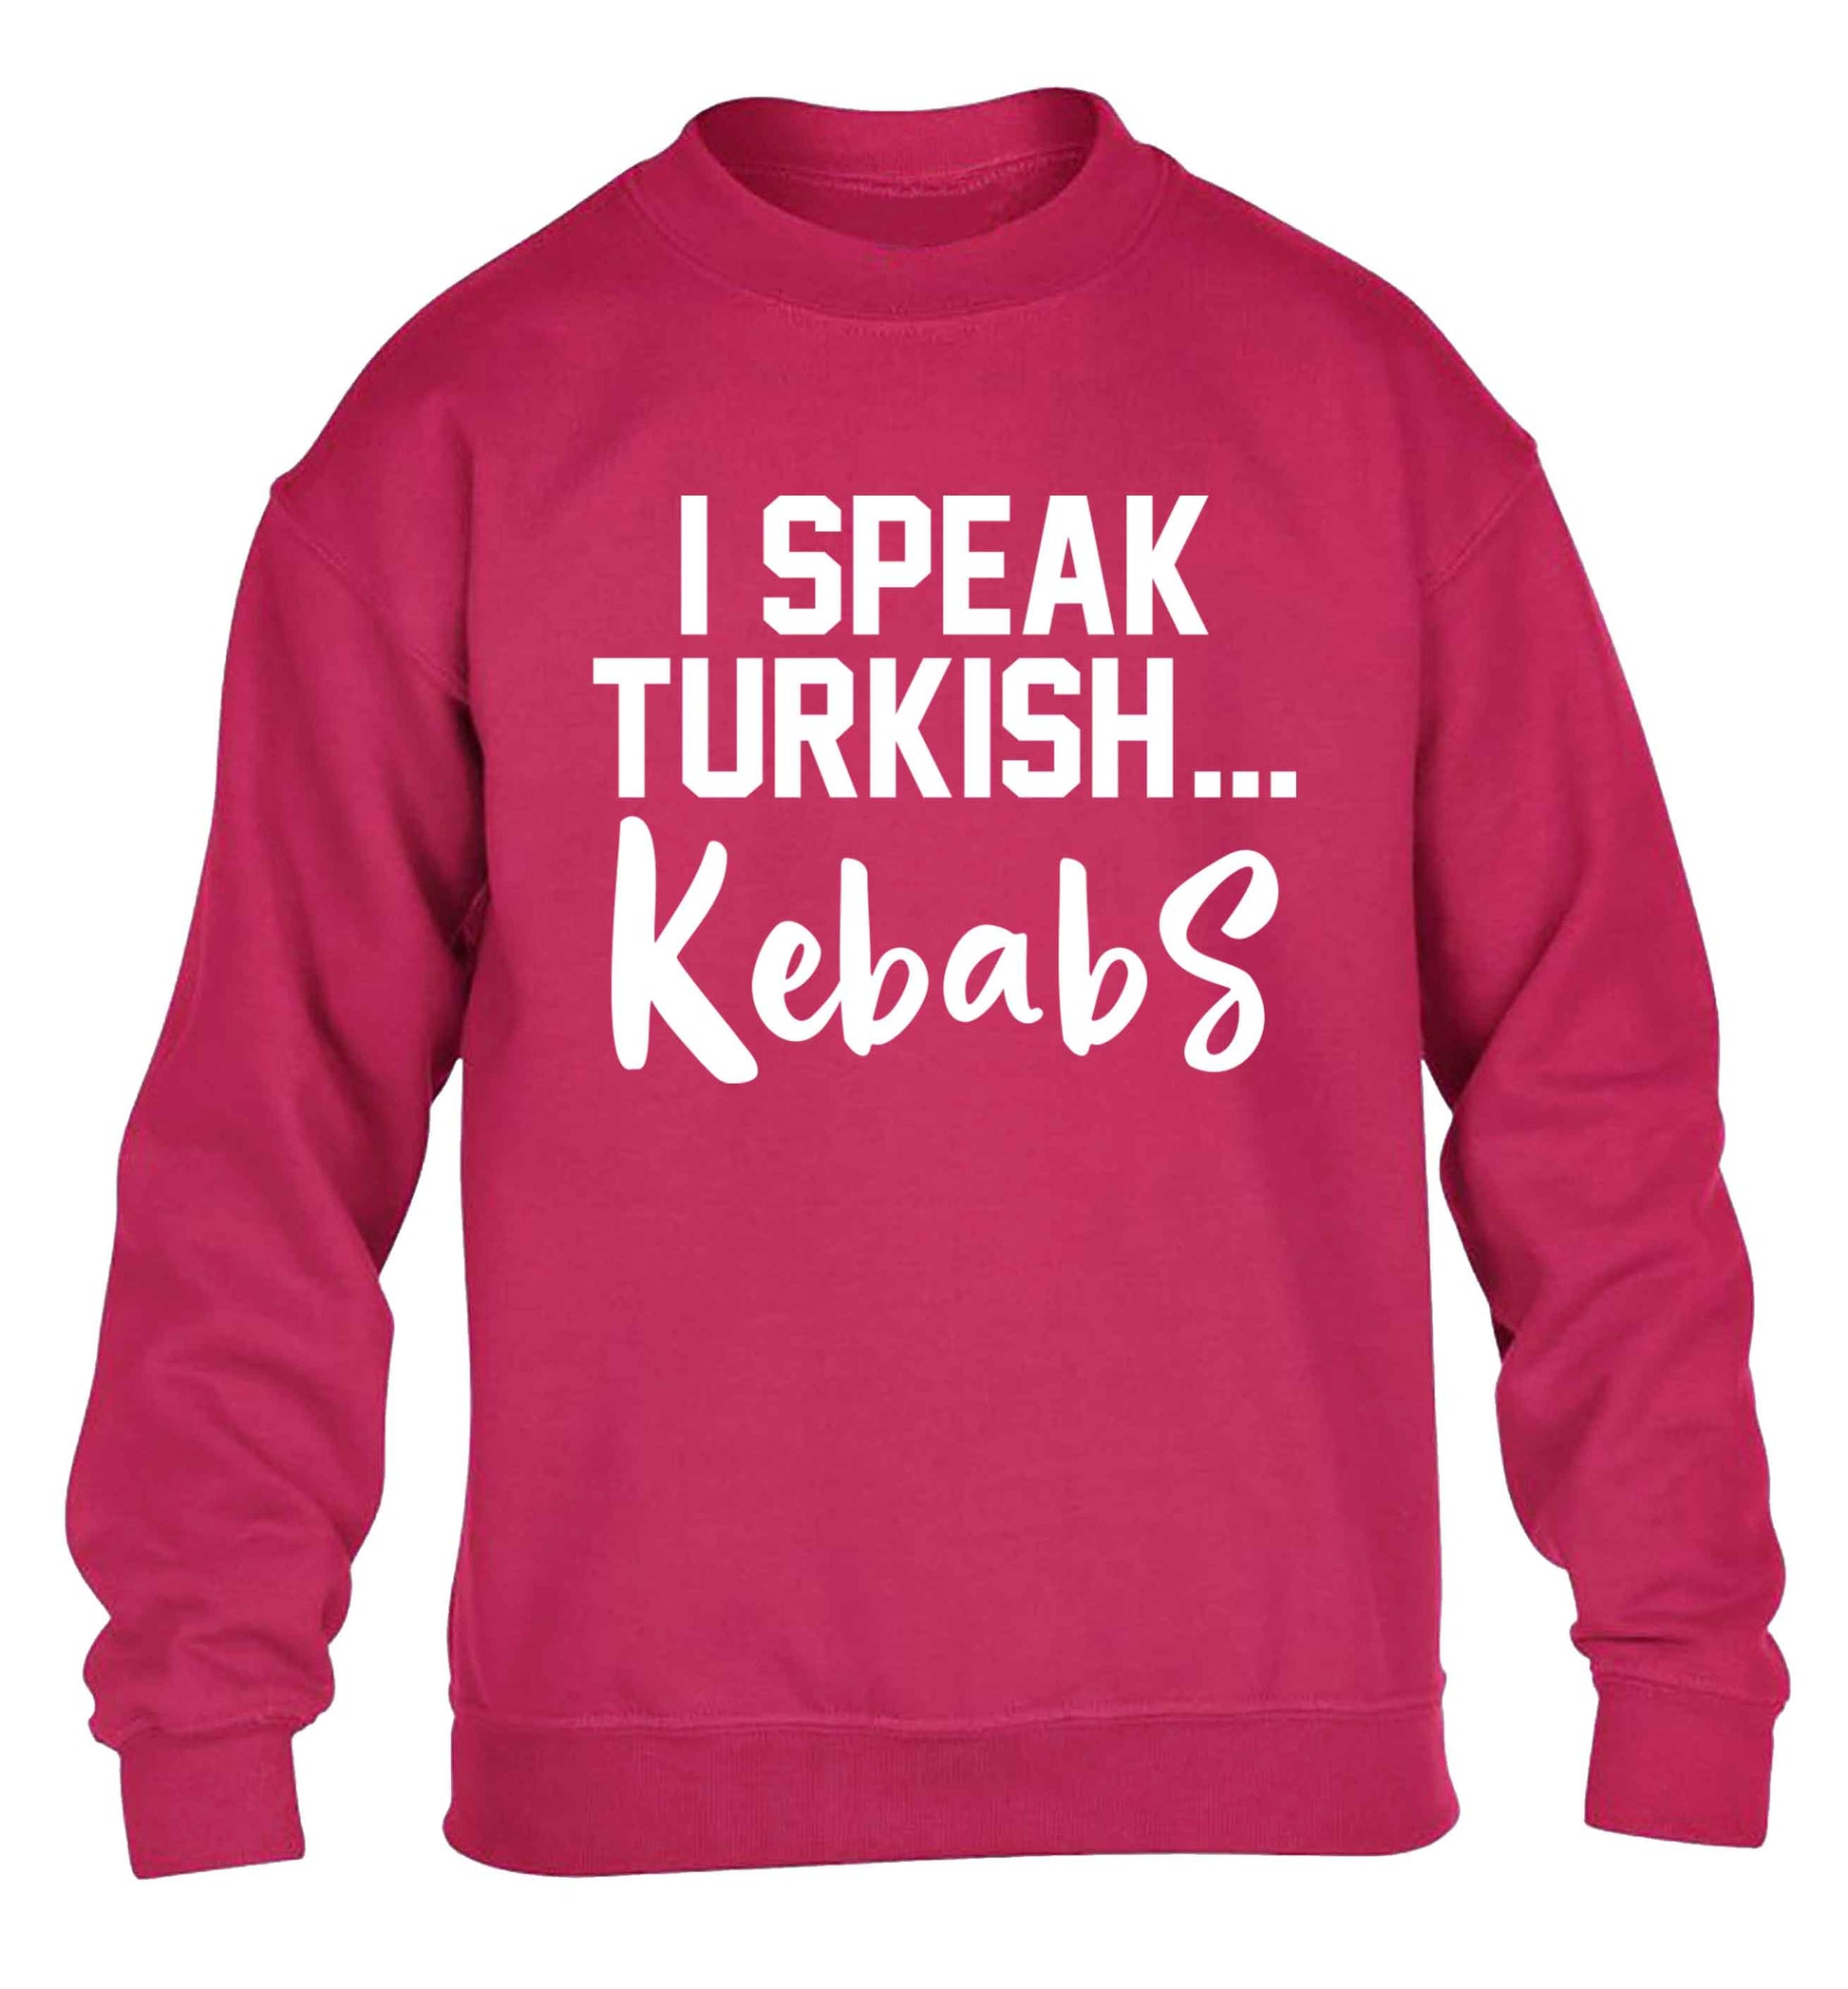 I speak Turkish...kebabs children's pink sweater 12-13 Years